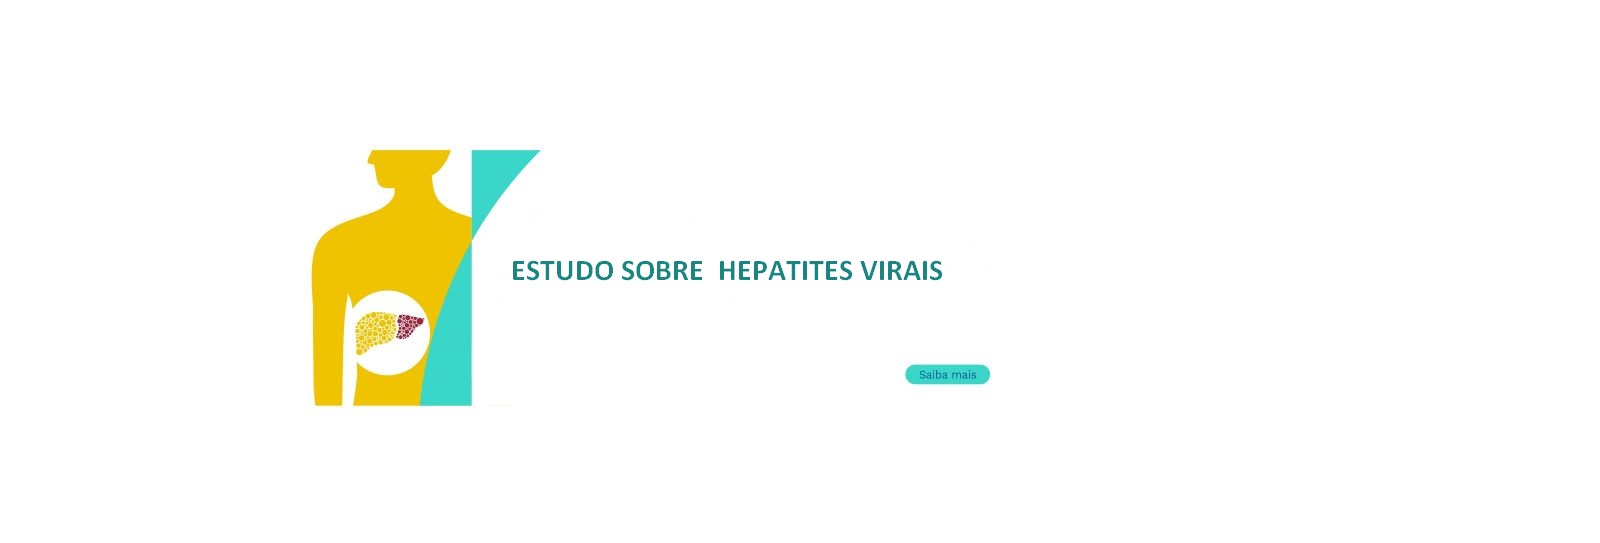 Estudo sobre Hepatites virais